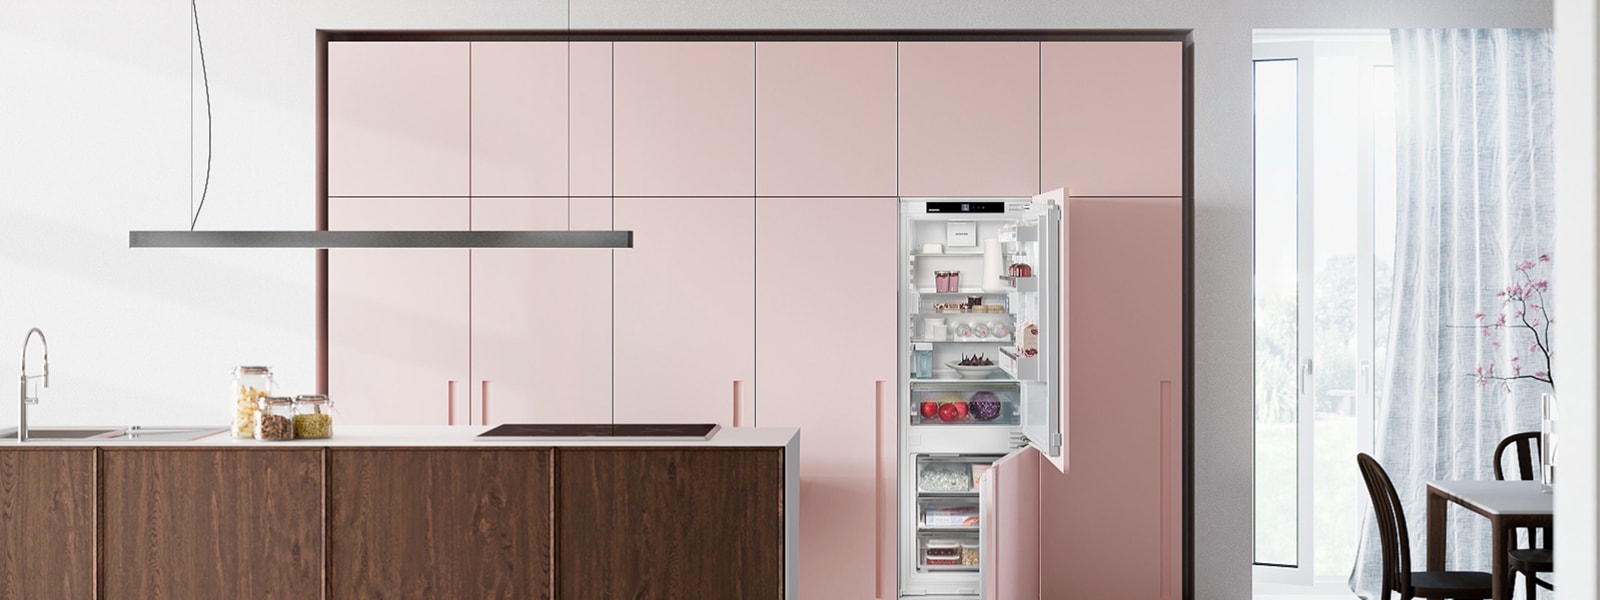 Das Bild zeigt eine Küche in rosa und Holzoptik mit einem Liebherr Kühlschrank